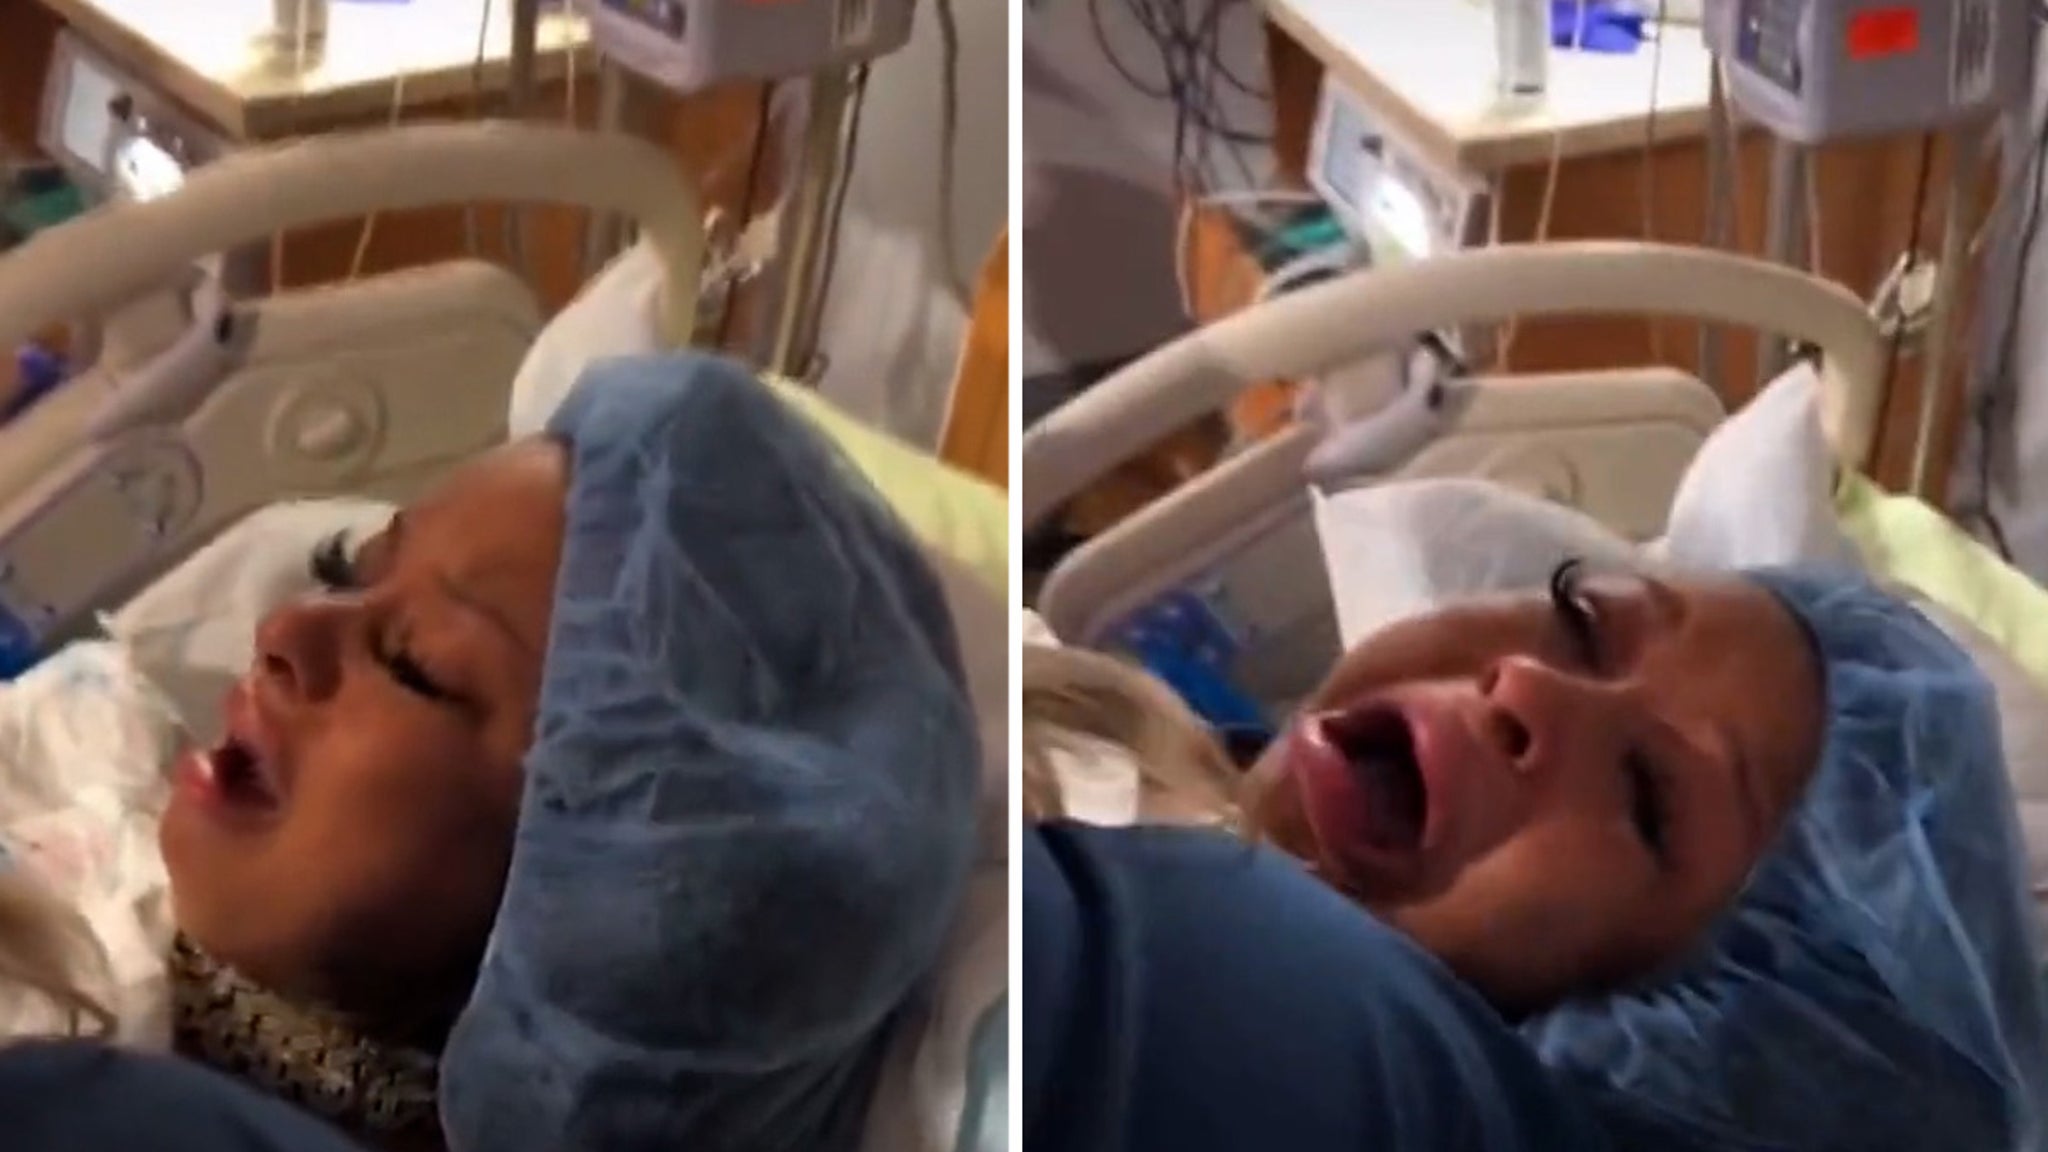 Chrisyn Rock bringt während einer Live-Übertragung auf Instagram einen kleinen Jungen zur Welt